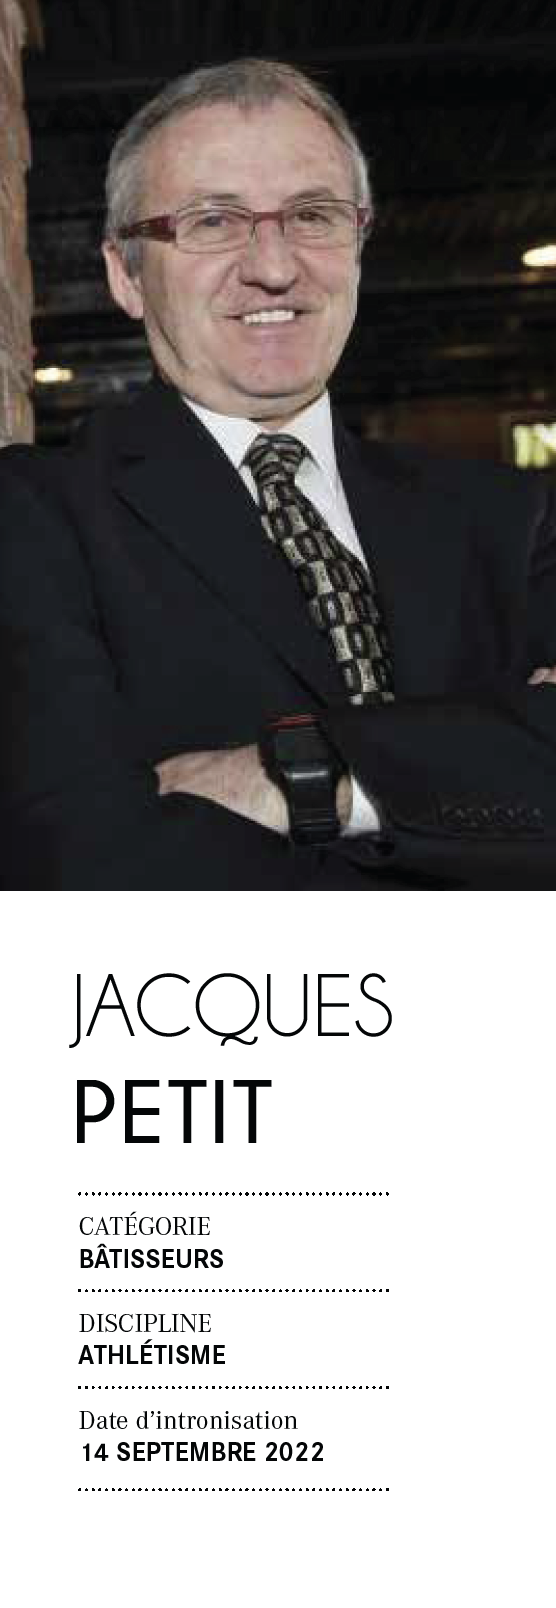 Jacques Petit